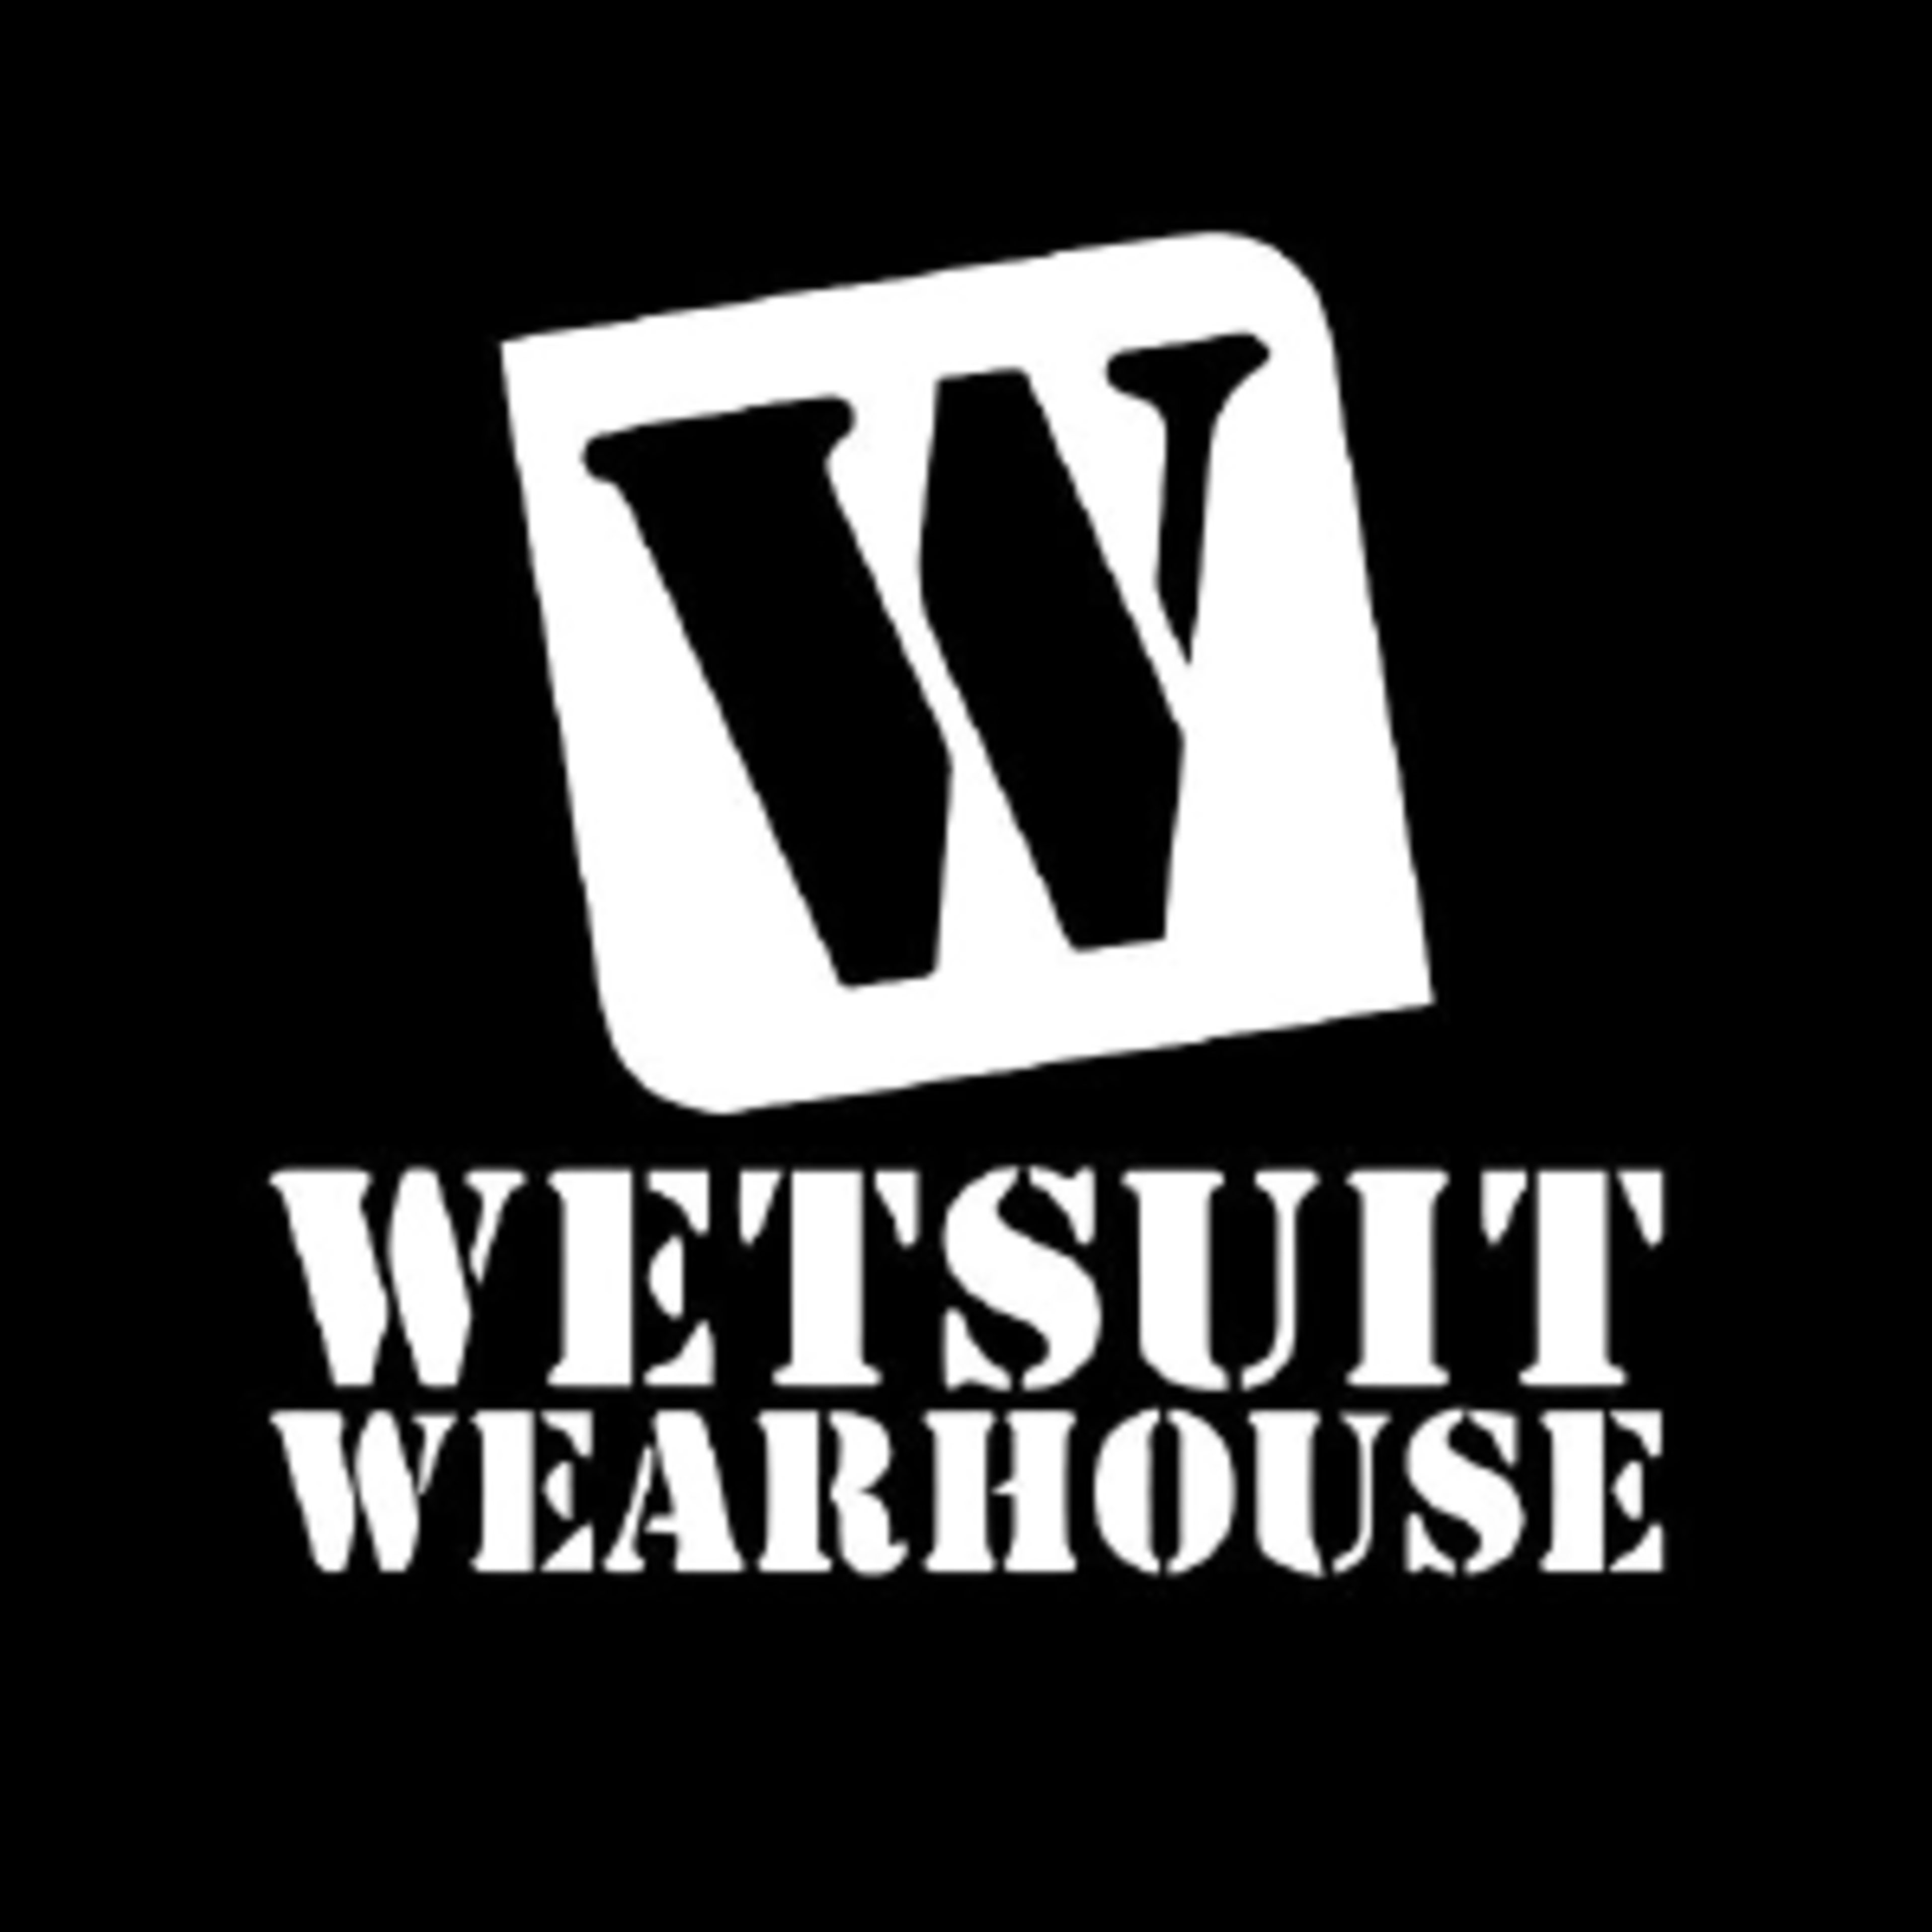 Wetsuit WearhouseCode